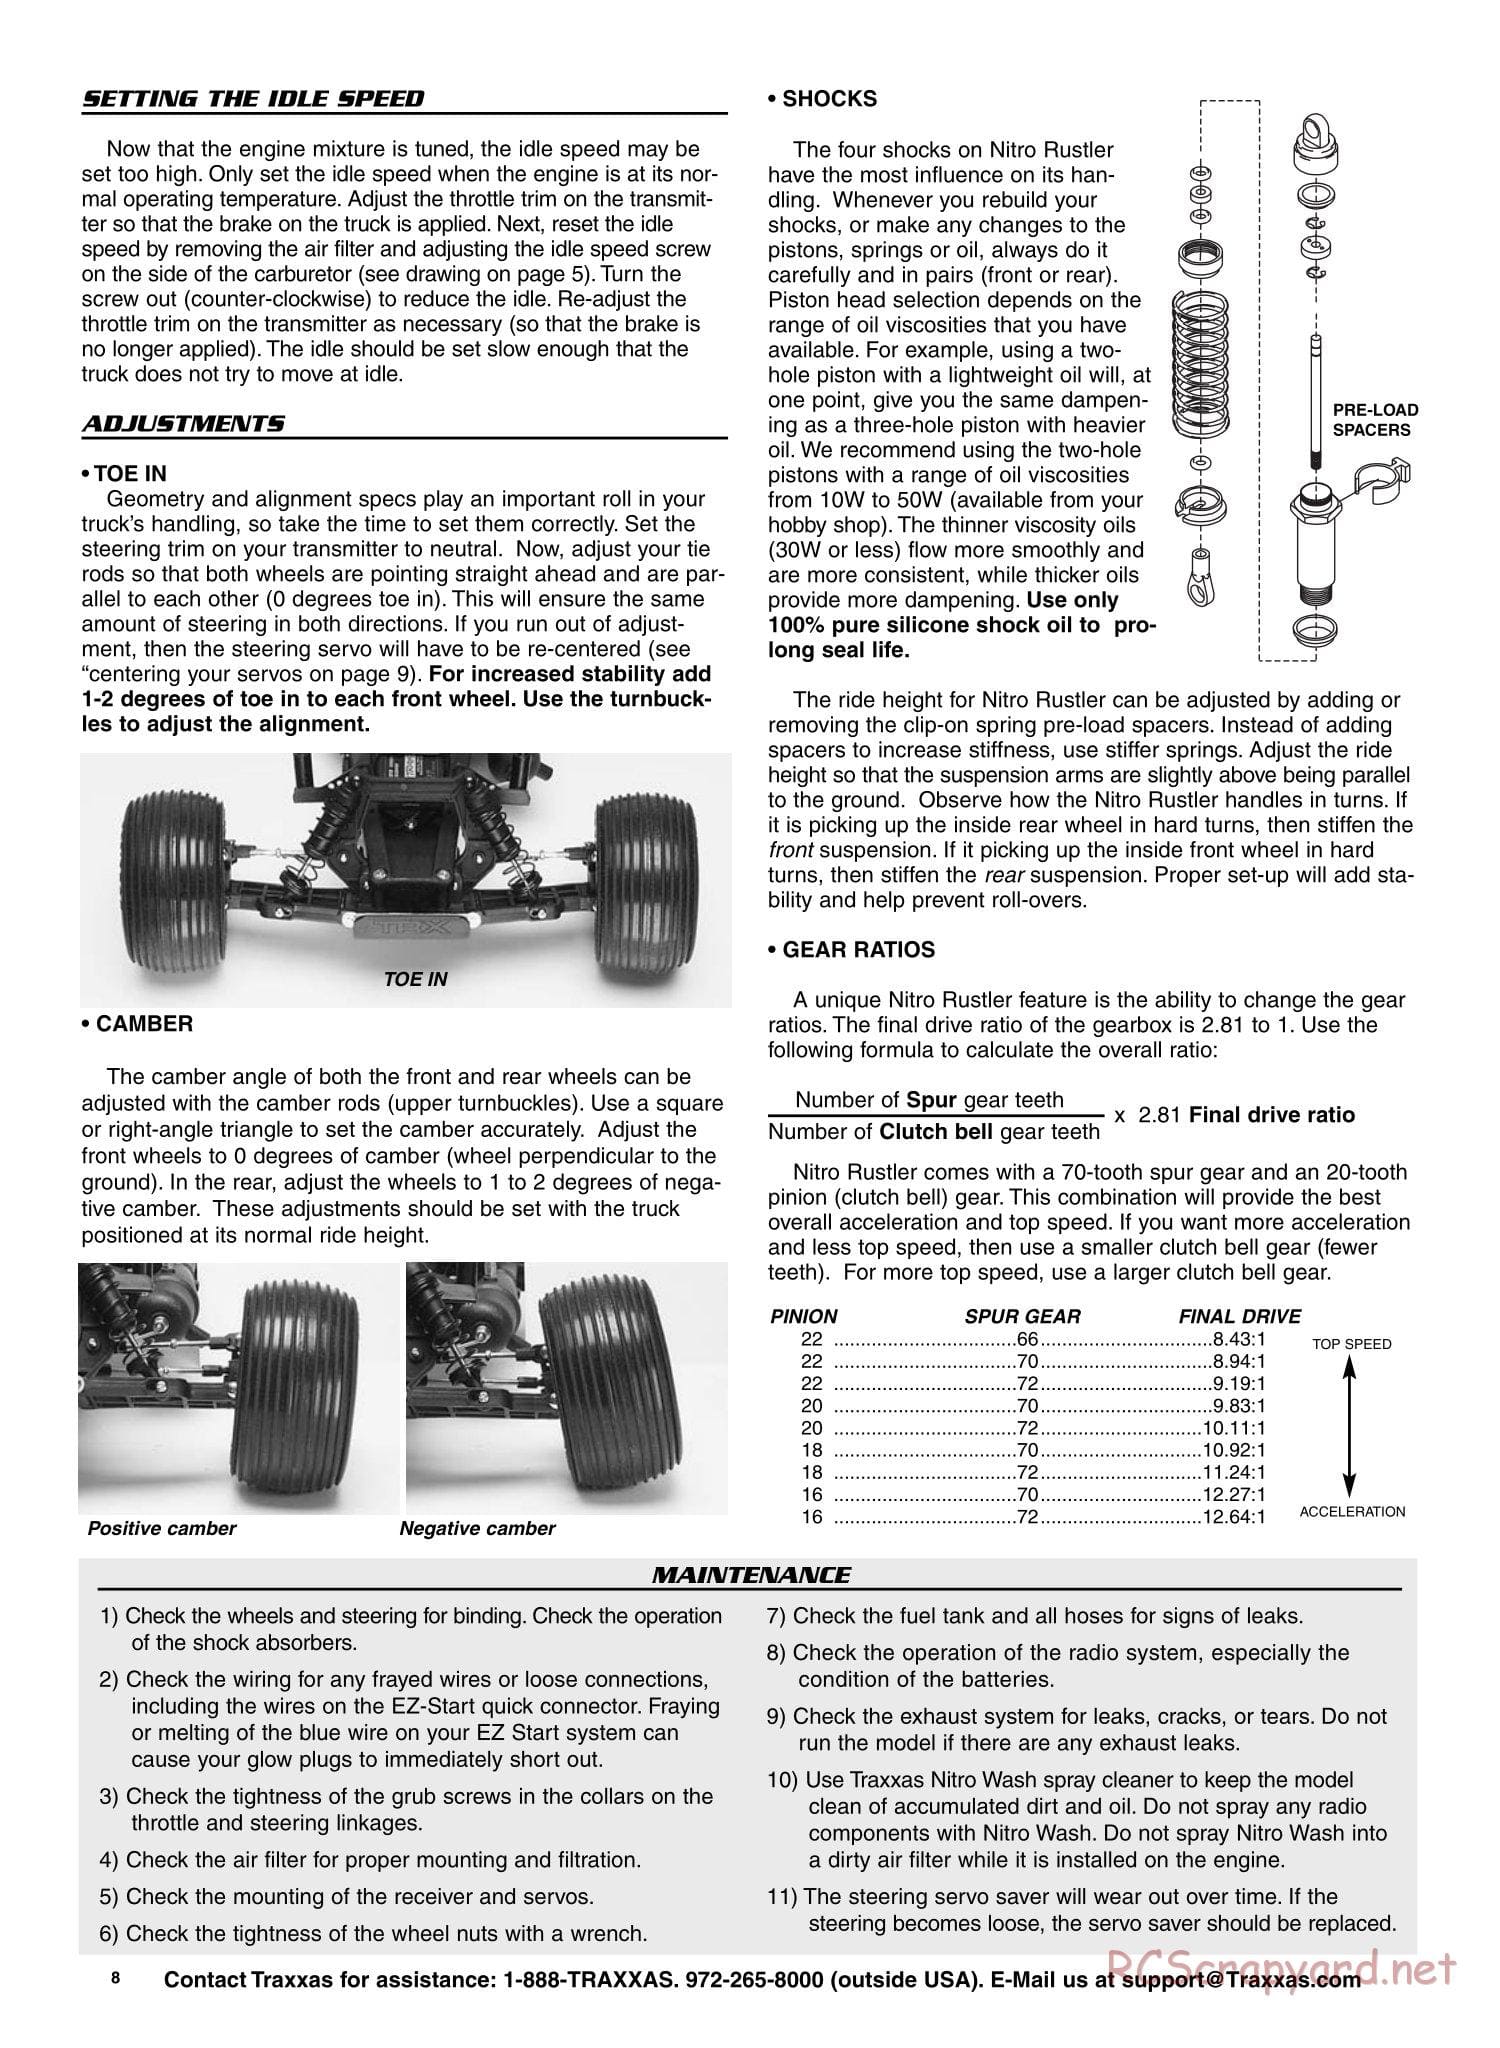 Traxxas - Nitro Rustler - Manual - Page 8